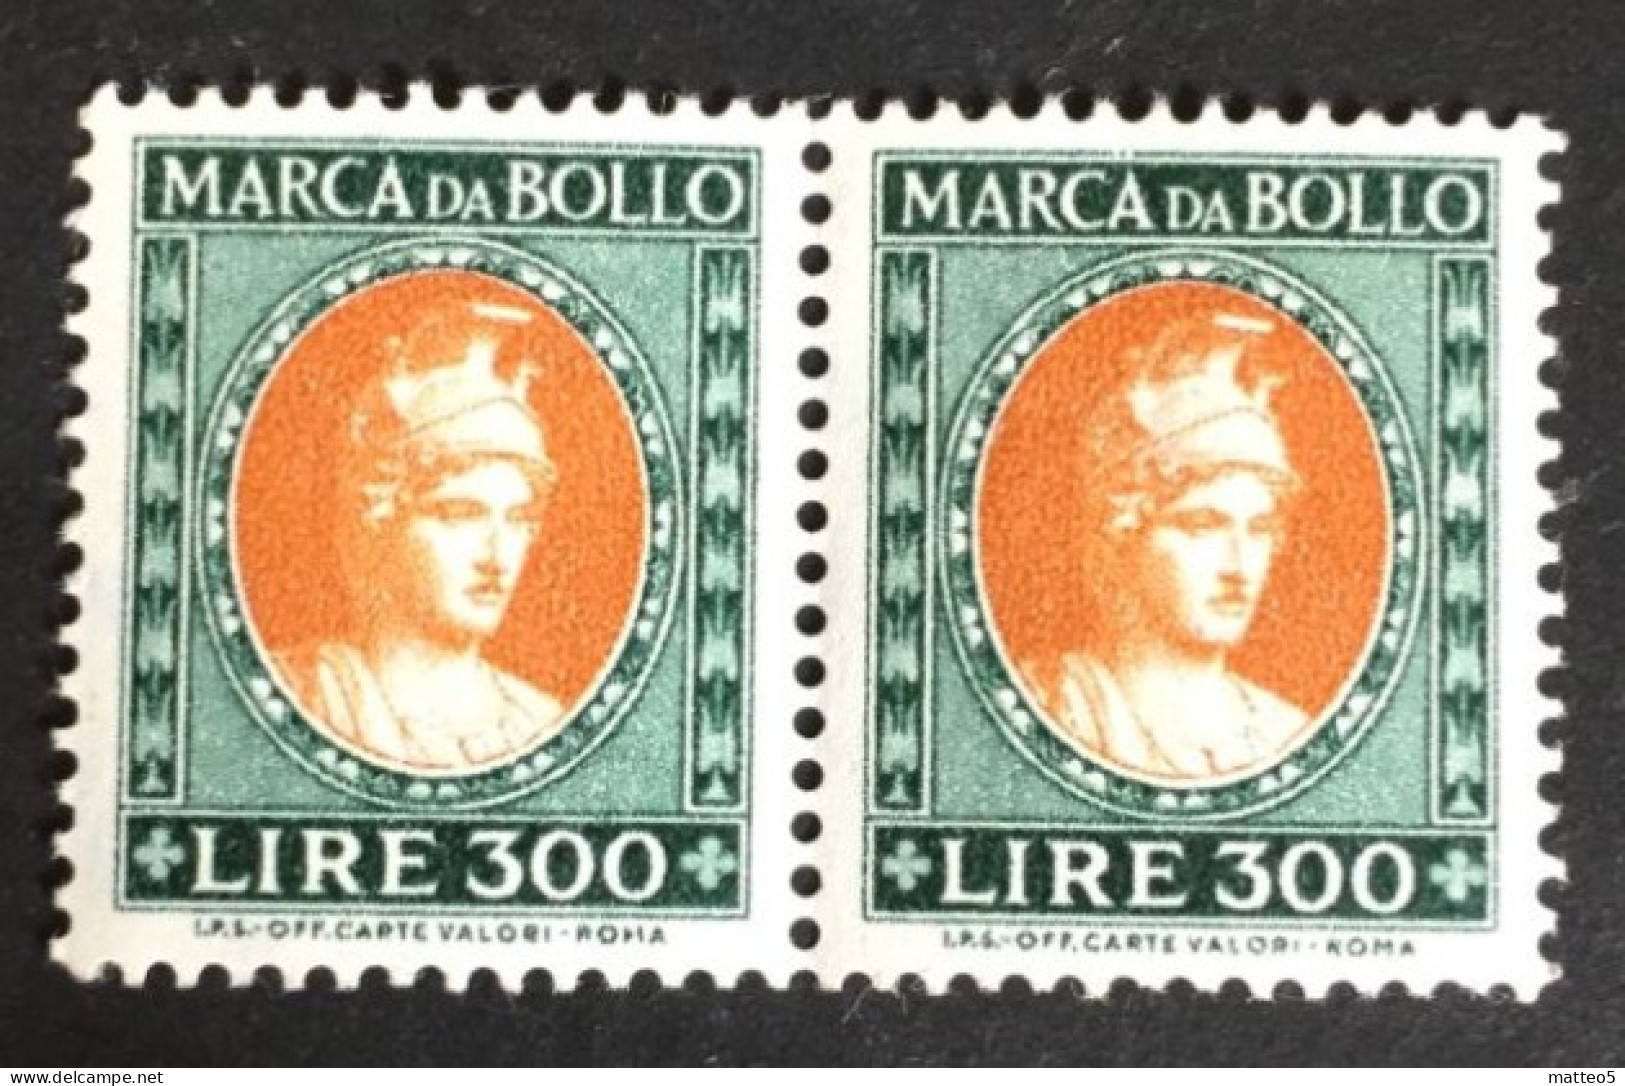 1971 - Italia - Marca Da Bollo Da Lire 300 - Coppia - Nuovi - A1 - Fiscali